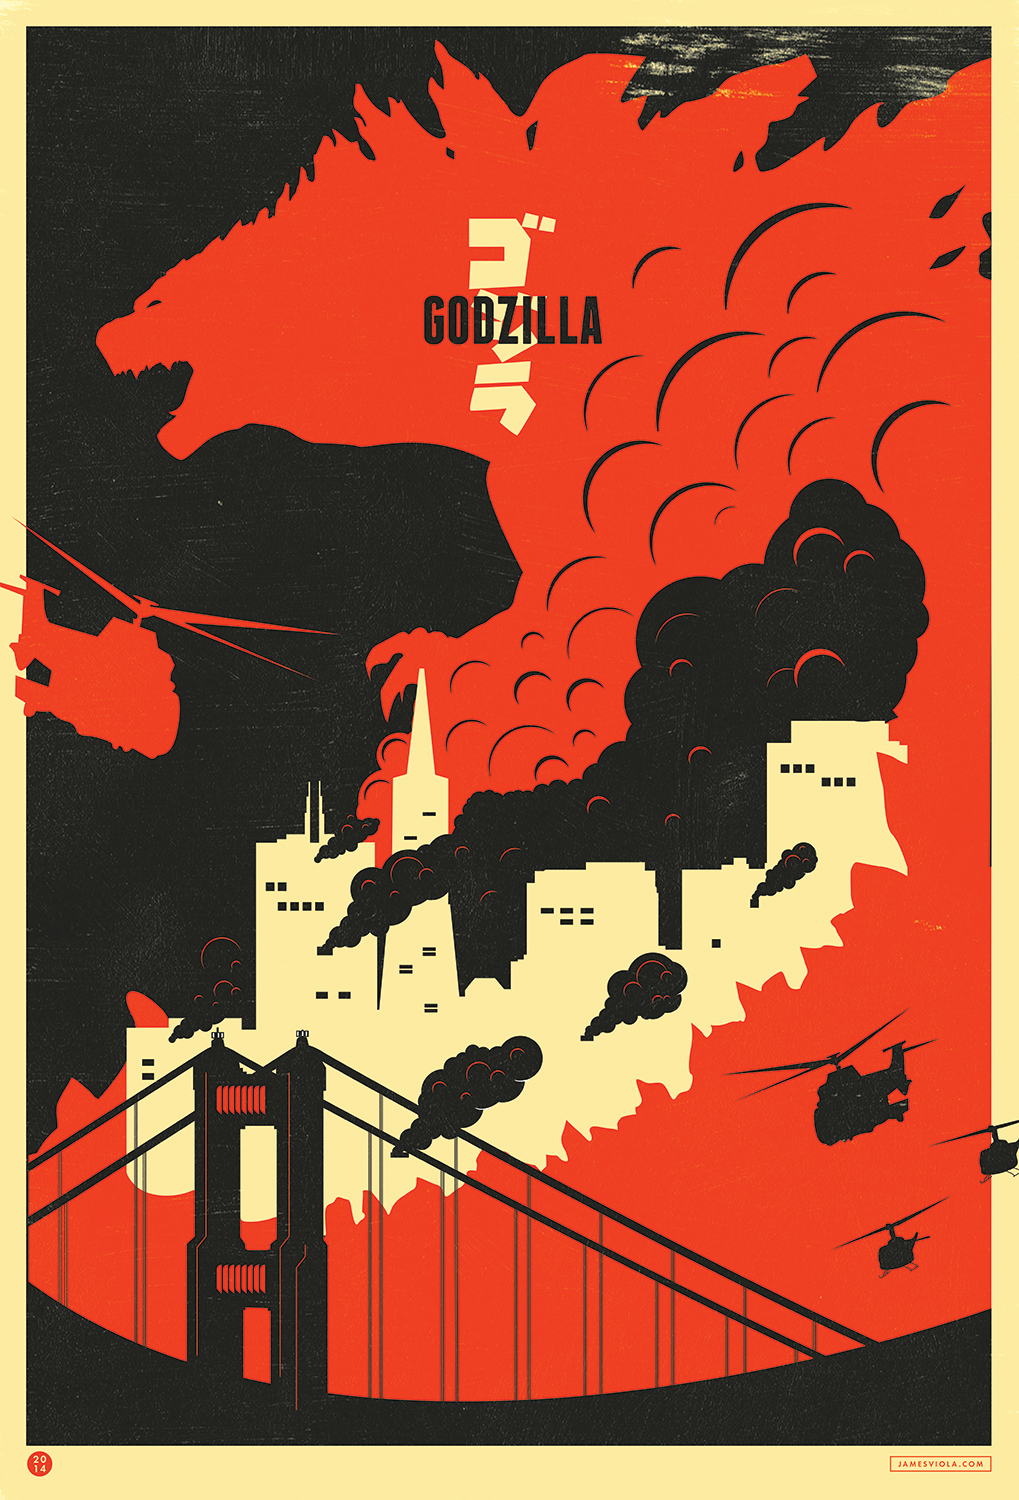 godzilla movie design poster contest